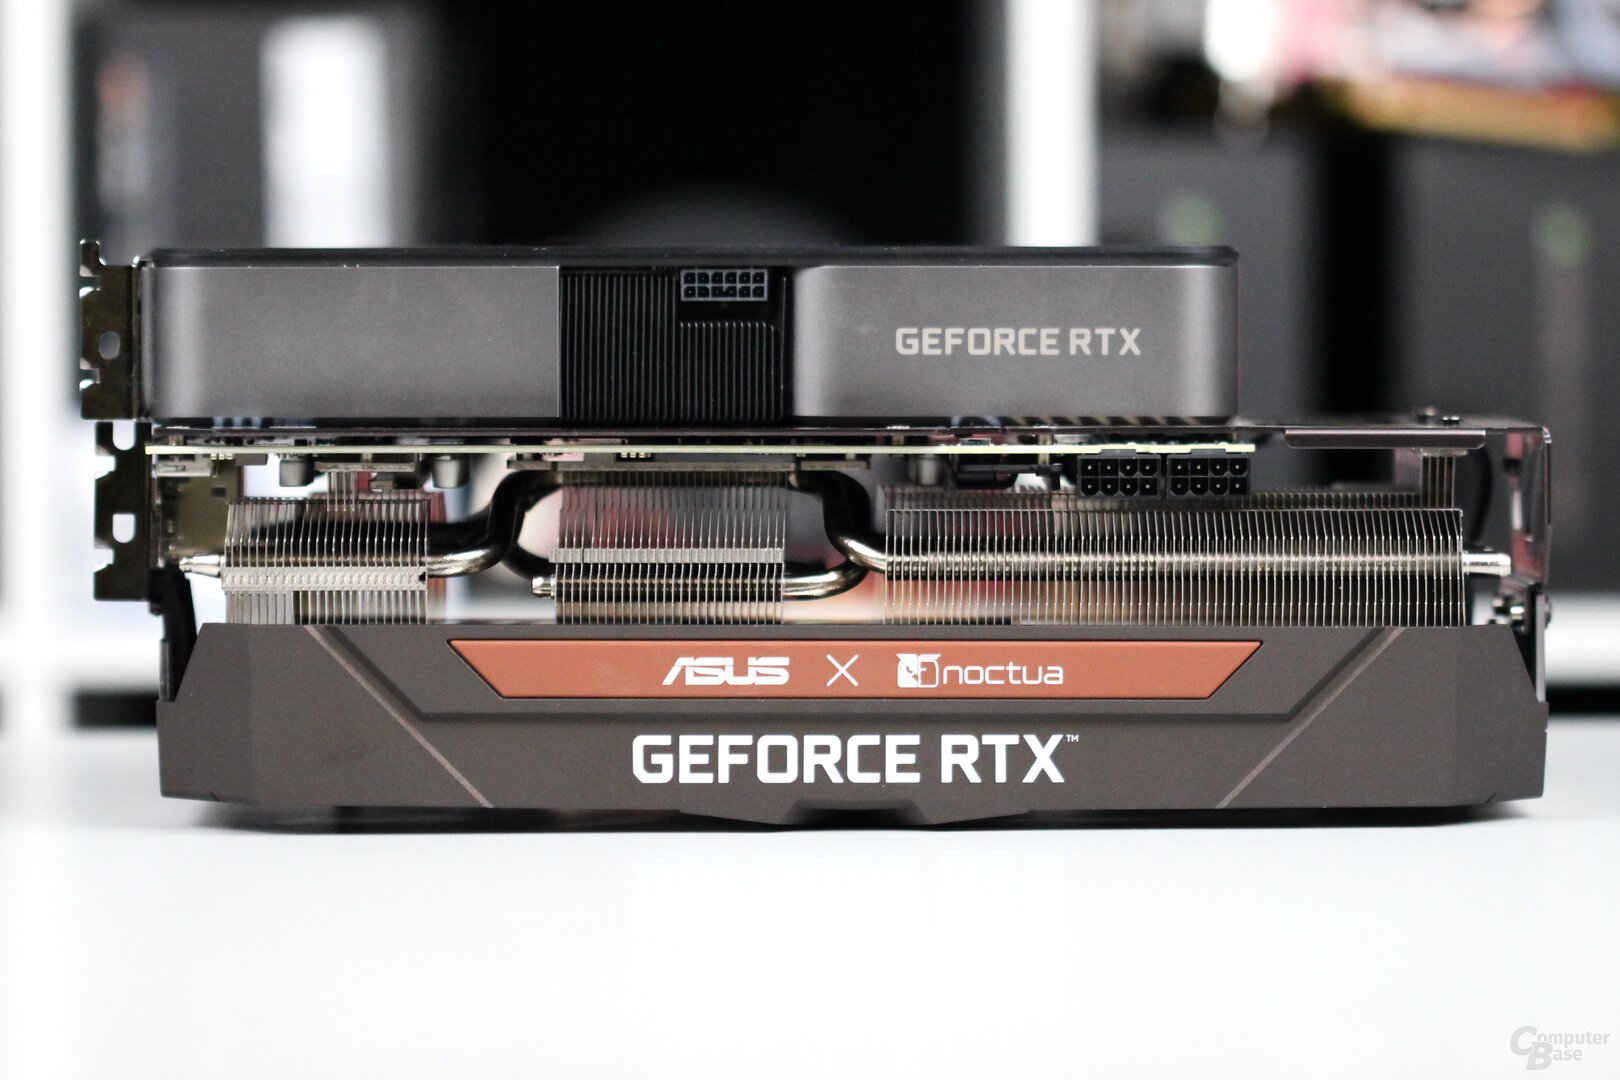 Die Noctua Edition im Vergleich zur GeForce RTX 3070 FE